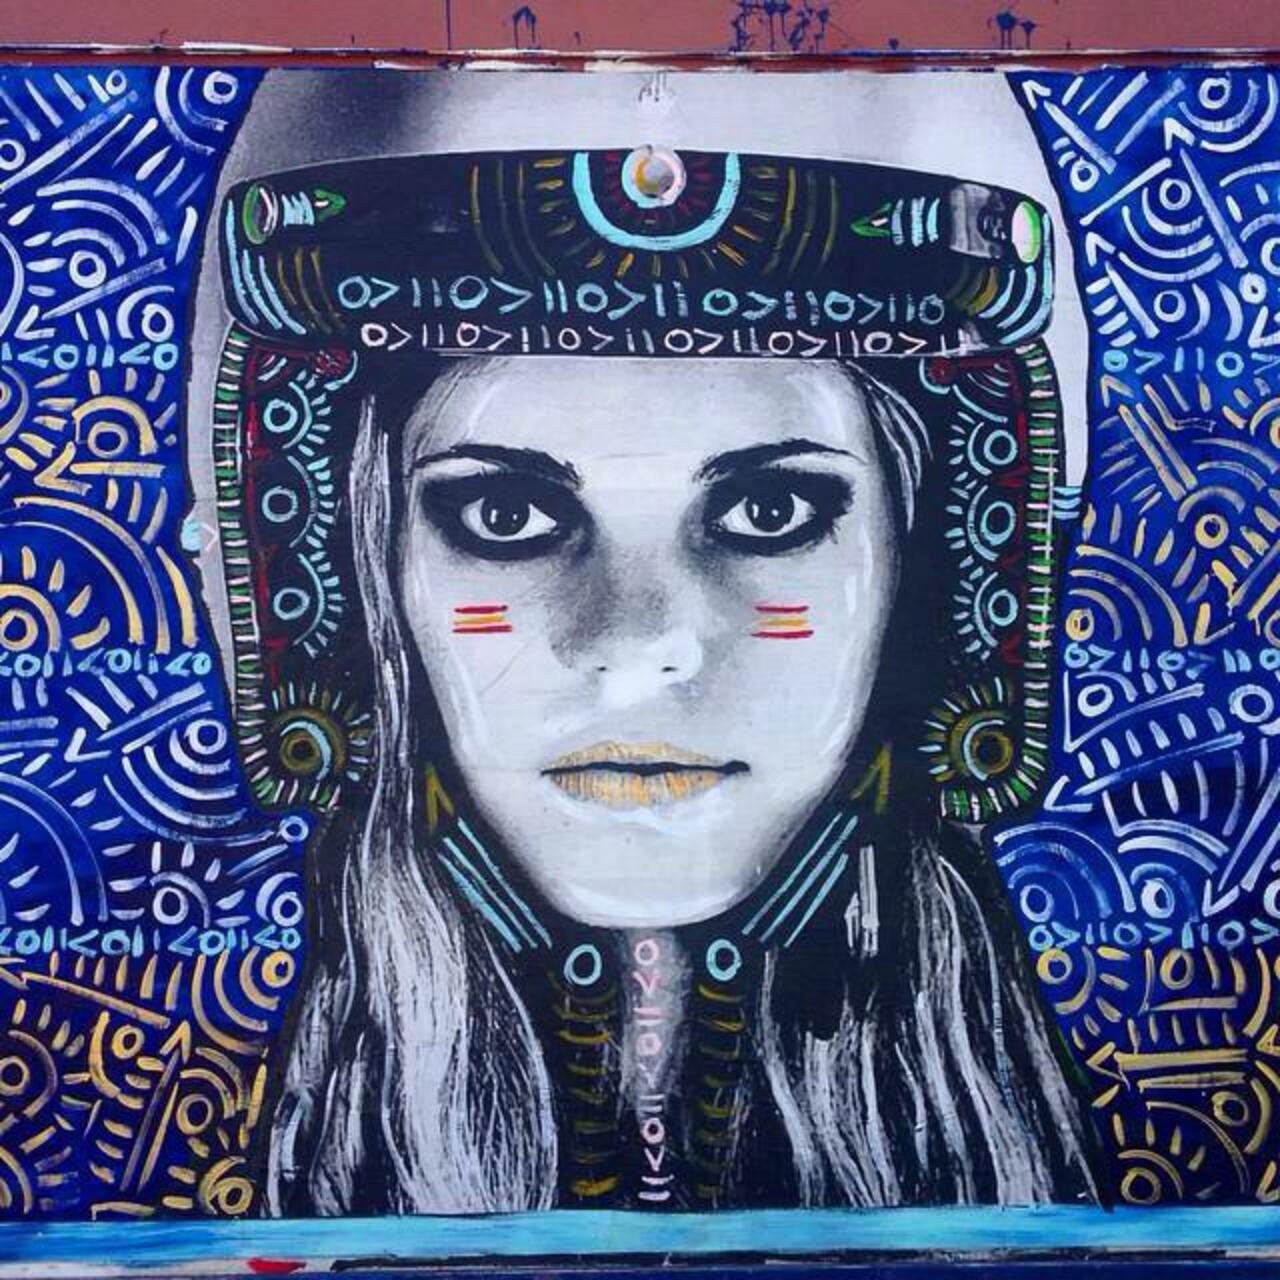 Street Art by Kelcey Fisher in LA
Photo by djcatnap

#art #arte #graffiti #streetart http://t.co/cre8mA7vAy